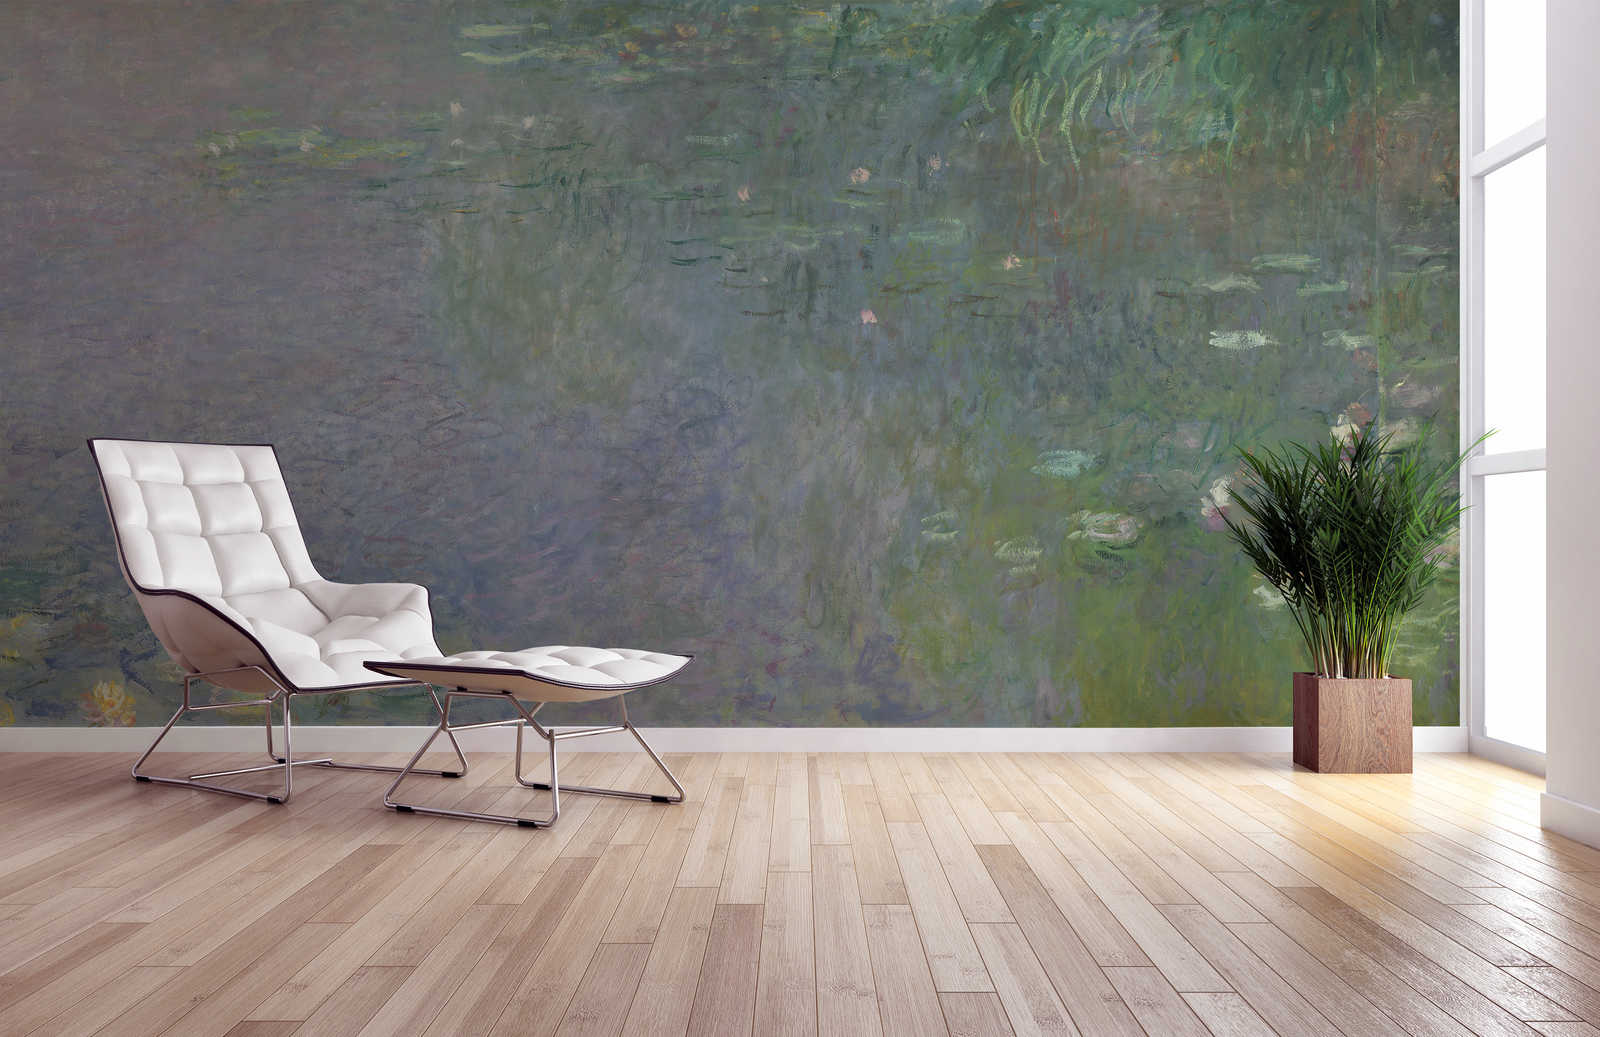             Waterlelies: ochtend" muurschildering van Claude Monet
        